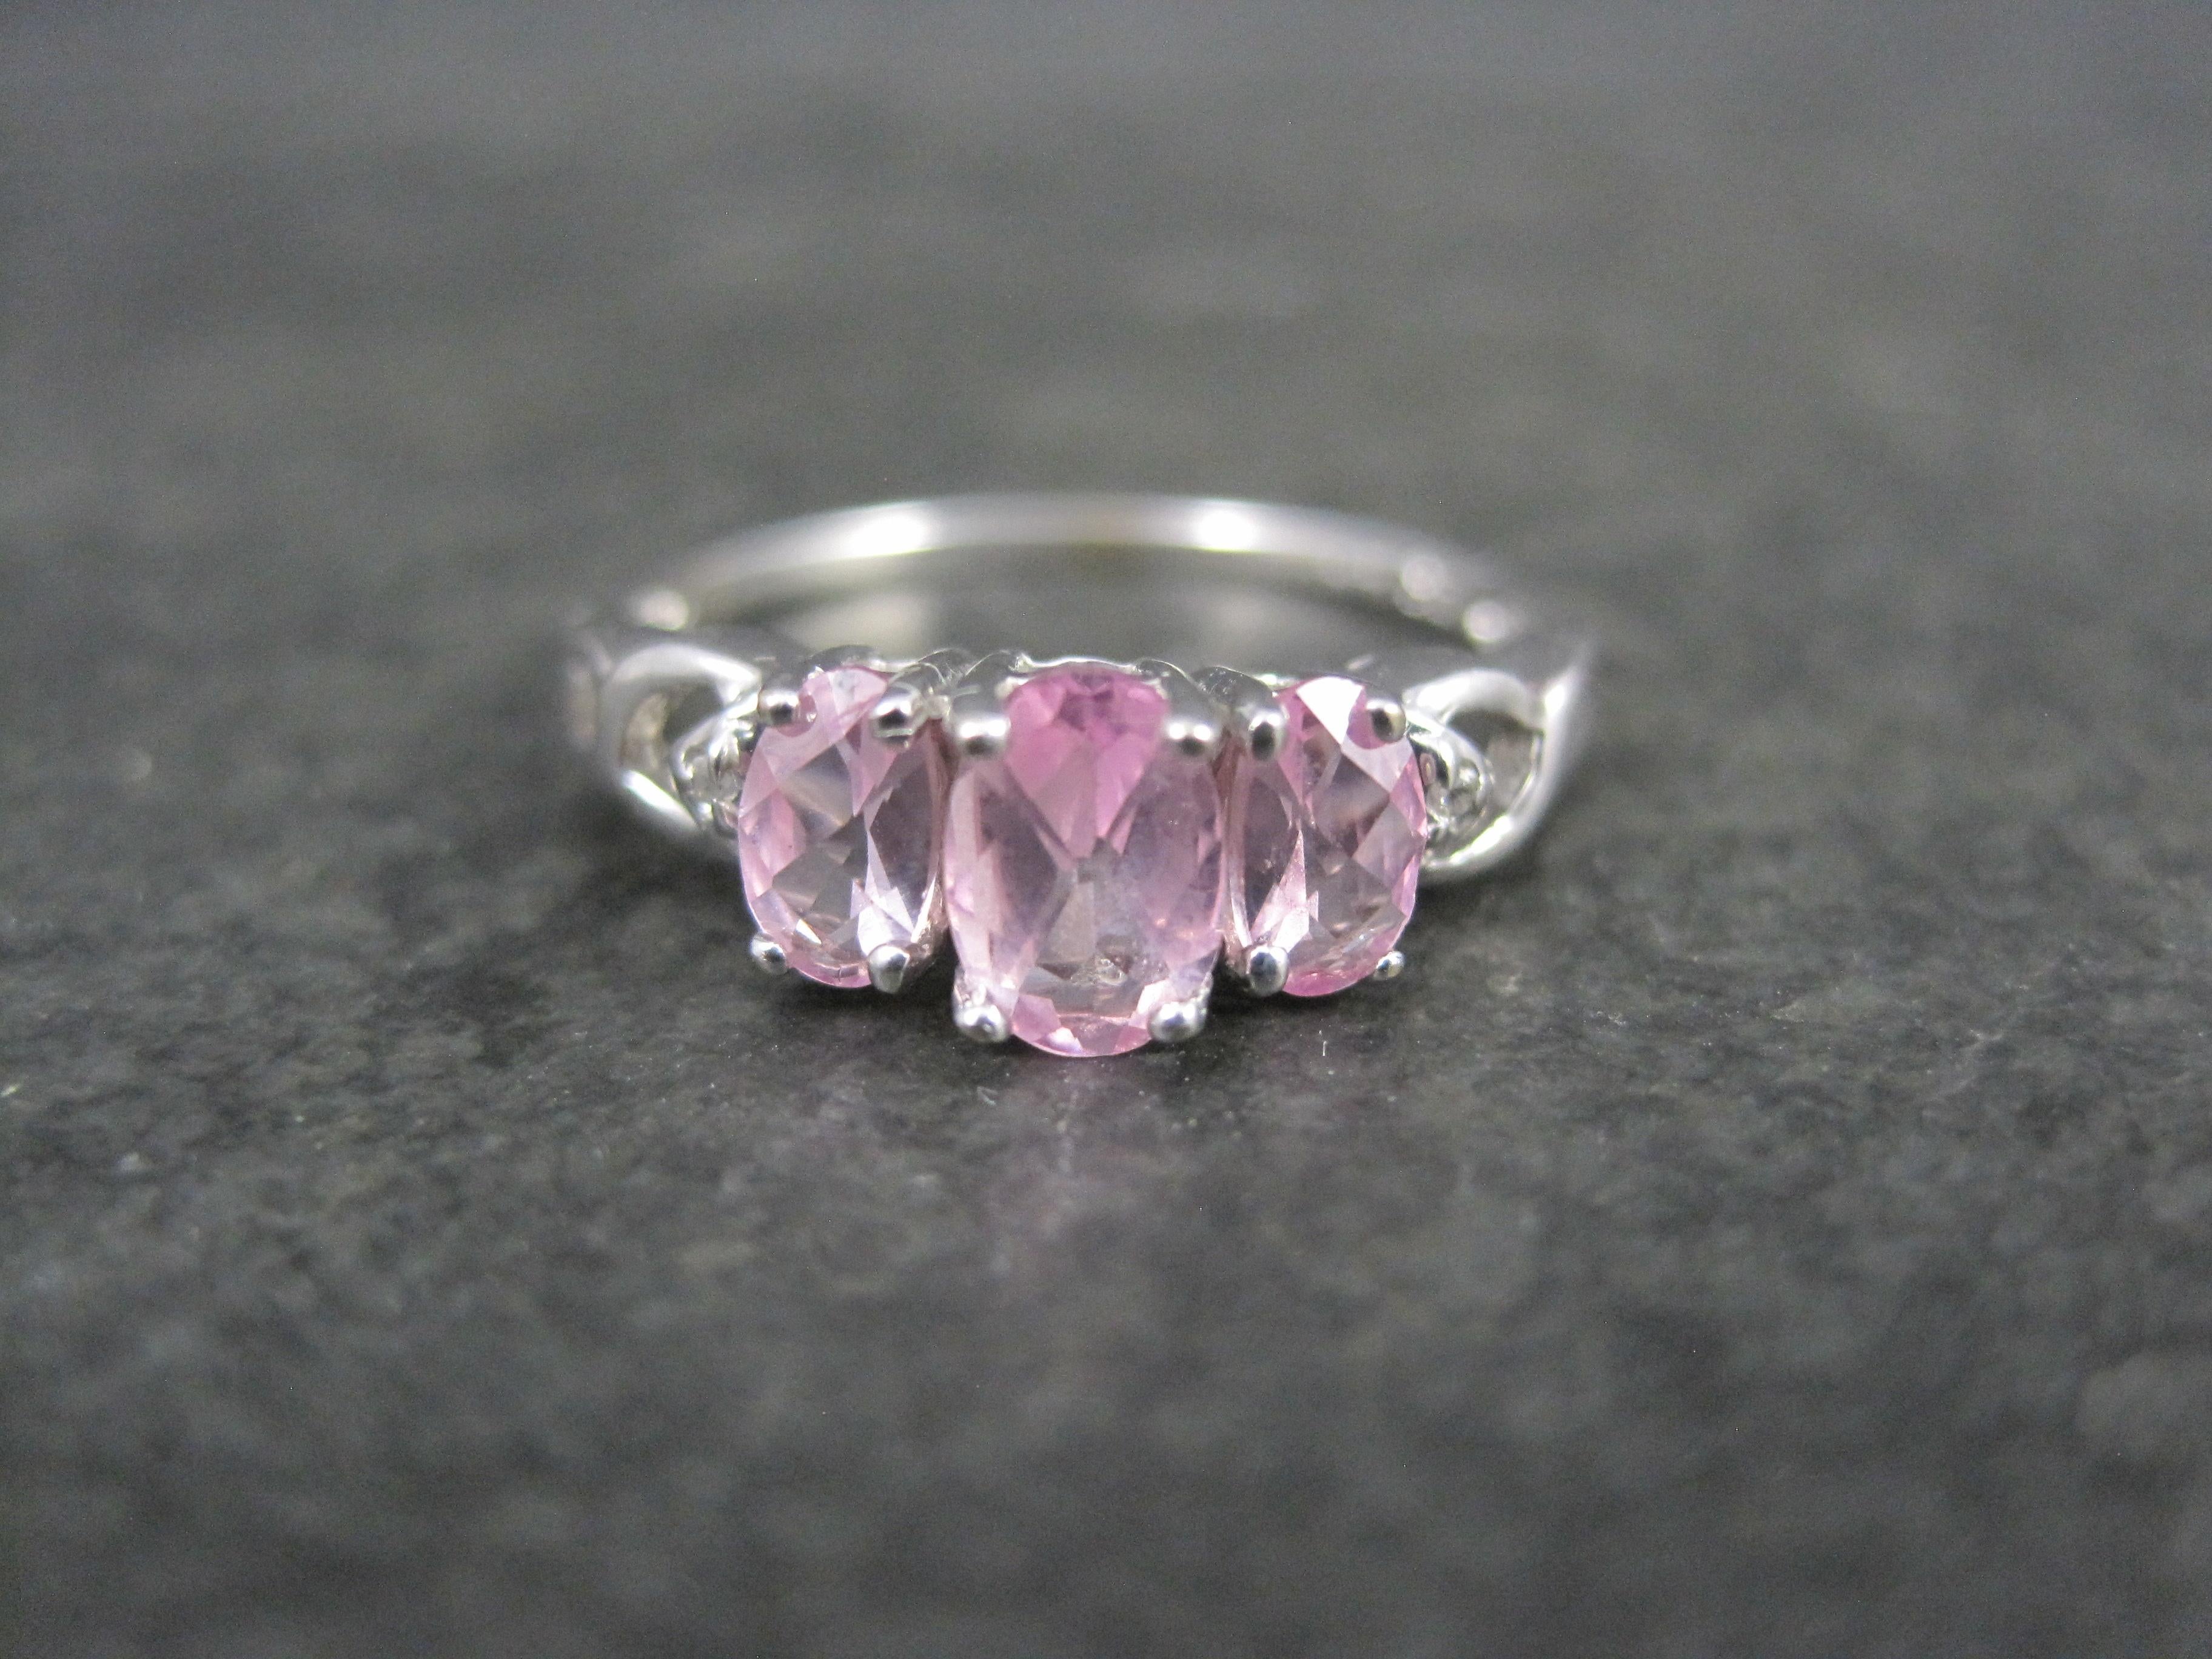 Dieser schöne, zierliche Ring besteht aus 10 Karat Weißgold.
Er hat einen geschätzten Wert von 0,80 Karat in einem oval geschliffenen rosa Topas und einen winzigen Diamantakzent auf jeder Seite.

Die Vorderseite dieses Rings misst 1/4 Zoll von